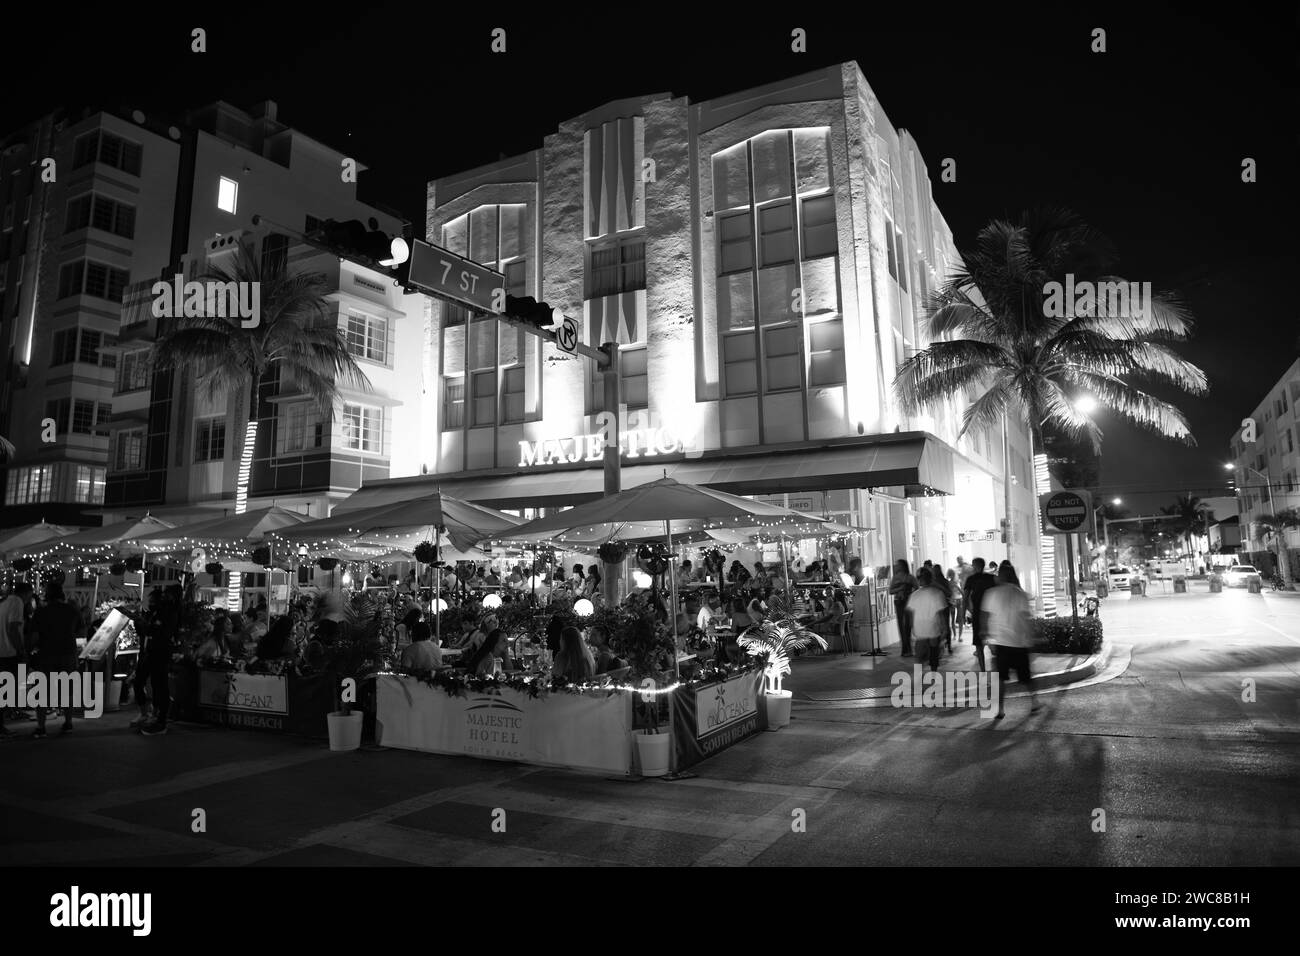 Miami, Floride États-Unis - 16 avril 2021: Miami South Beach Ocean Drive bâtiments illuminés dans la nuit rue de la ville de miami Banque D'Images